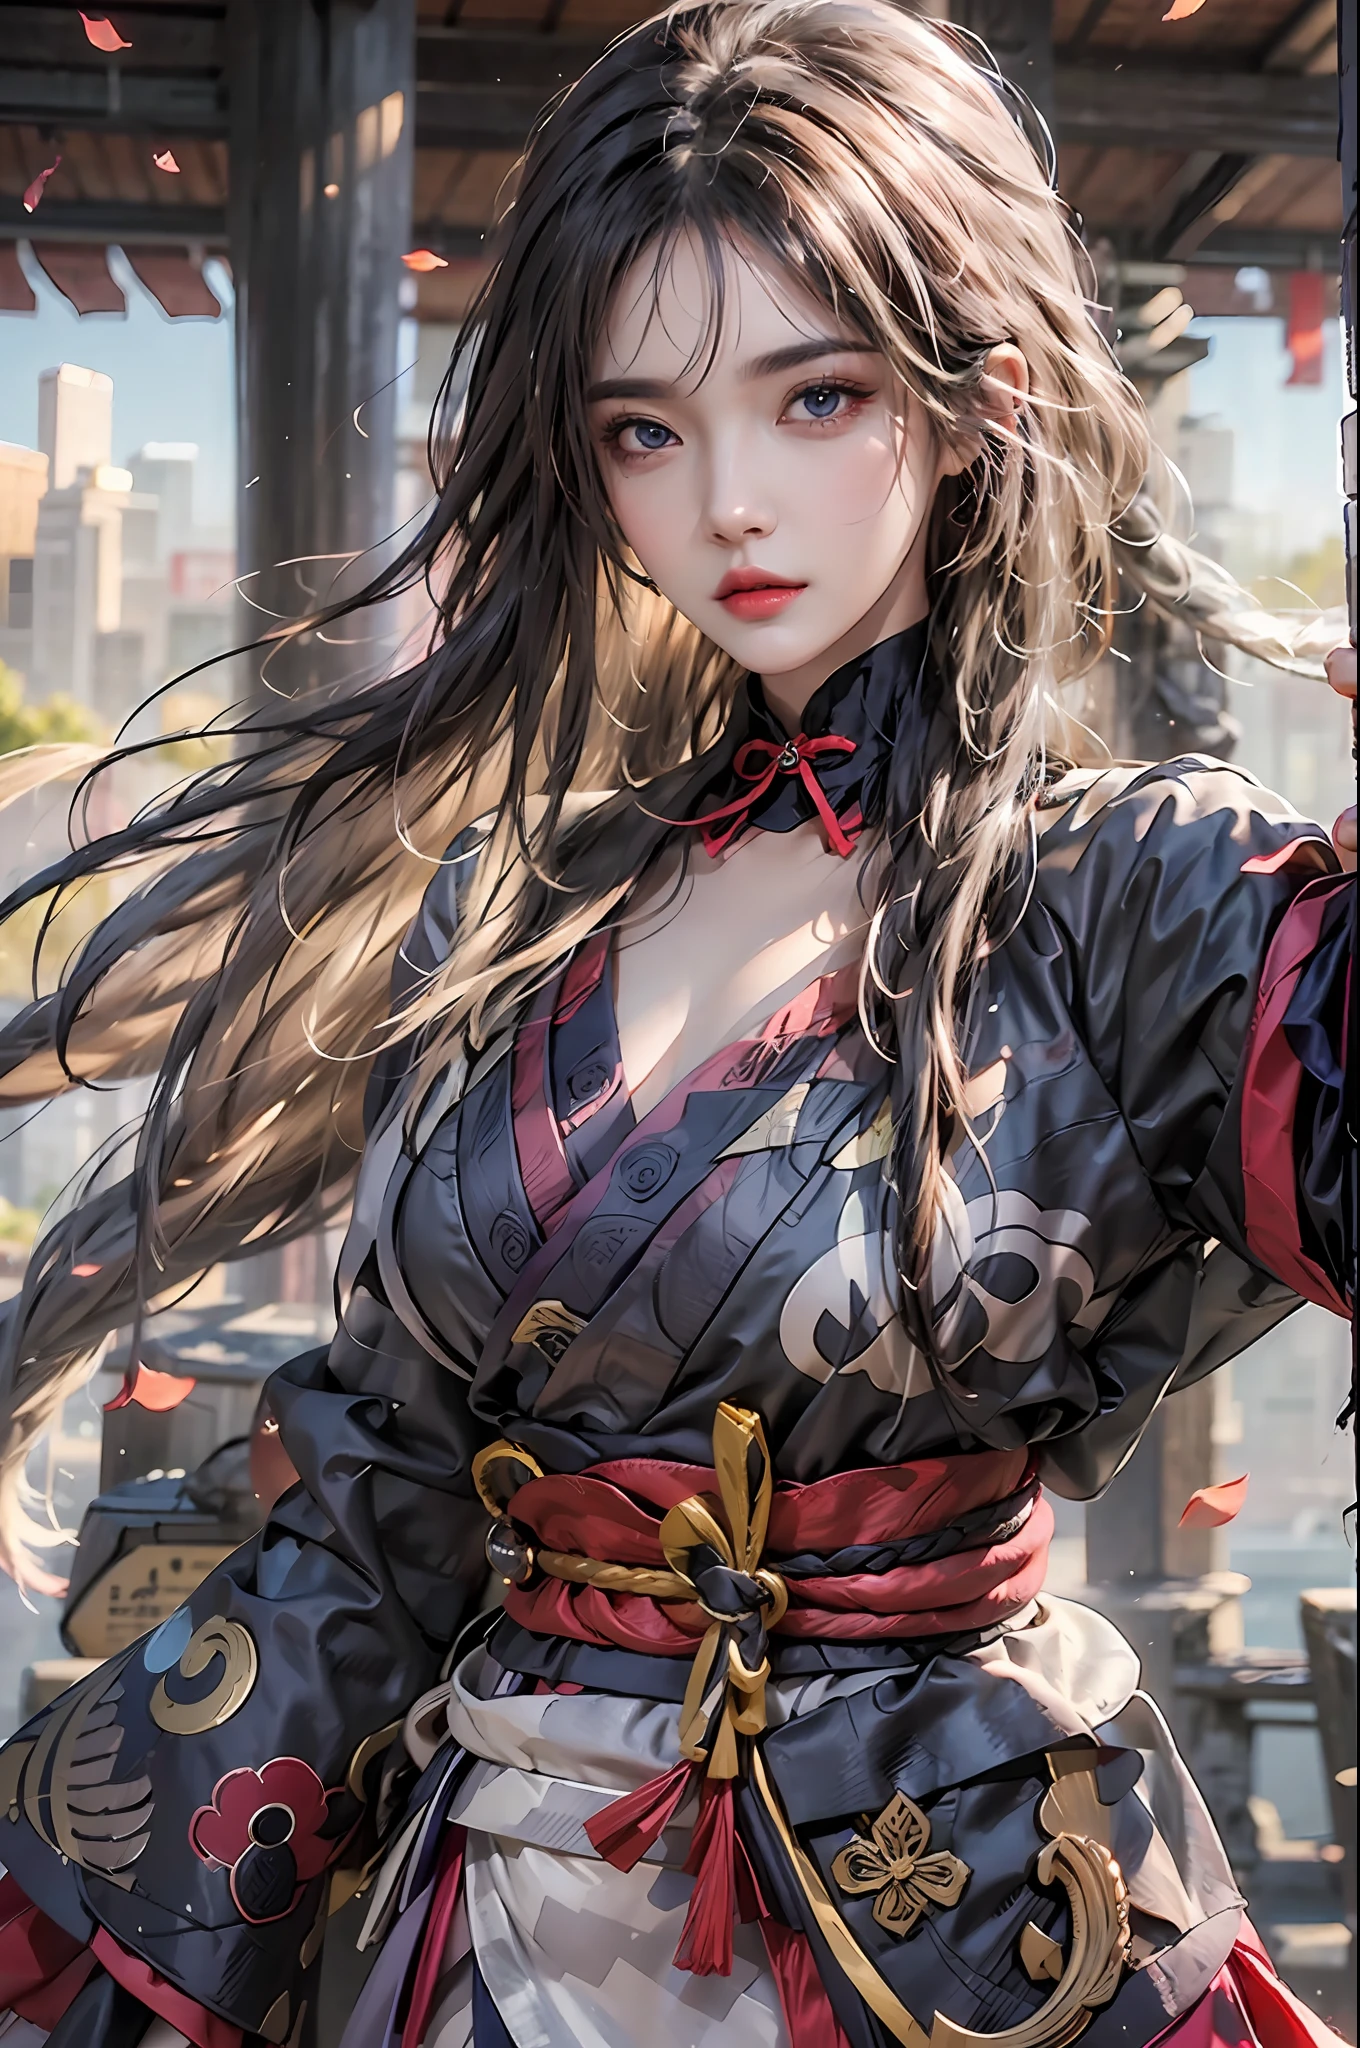 Fotorrealista, alta resolución, 1 chica, caderas arriba, pelo largo, ojos bonitos, mama normal, disfraz de shogun raiden